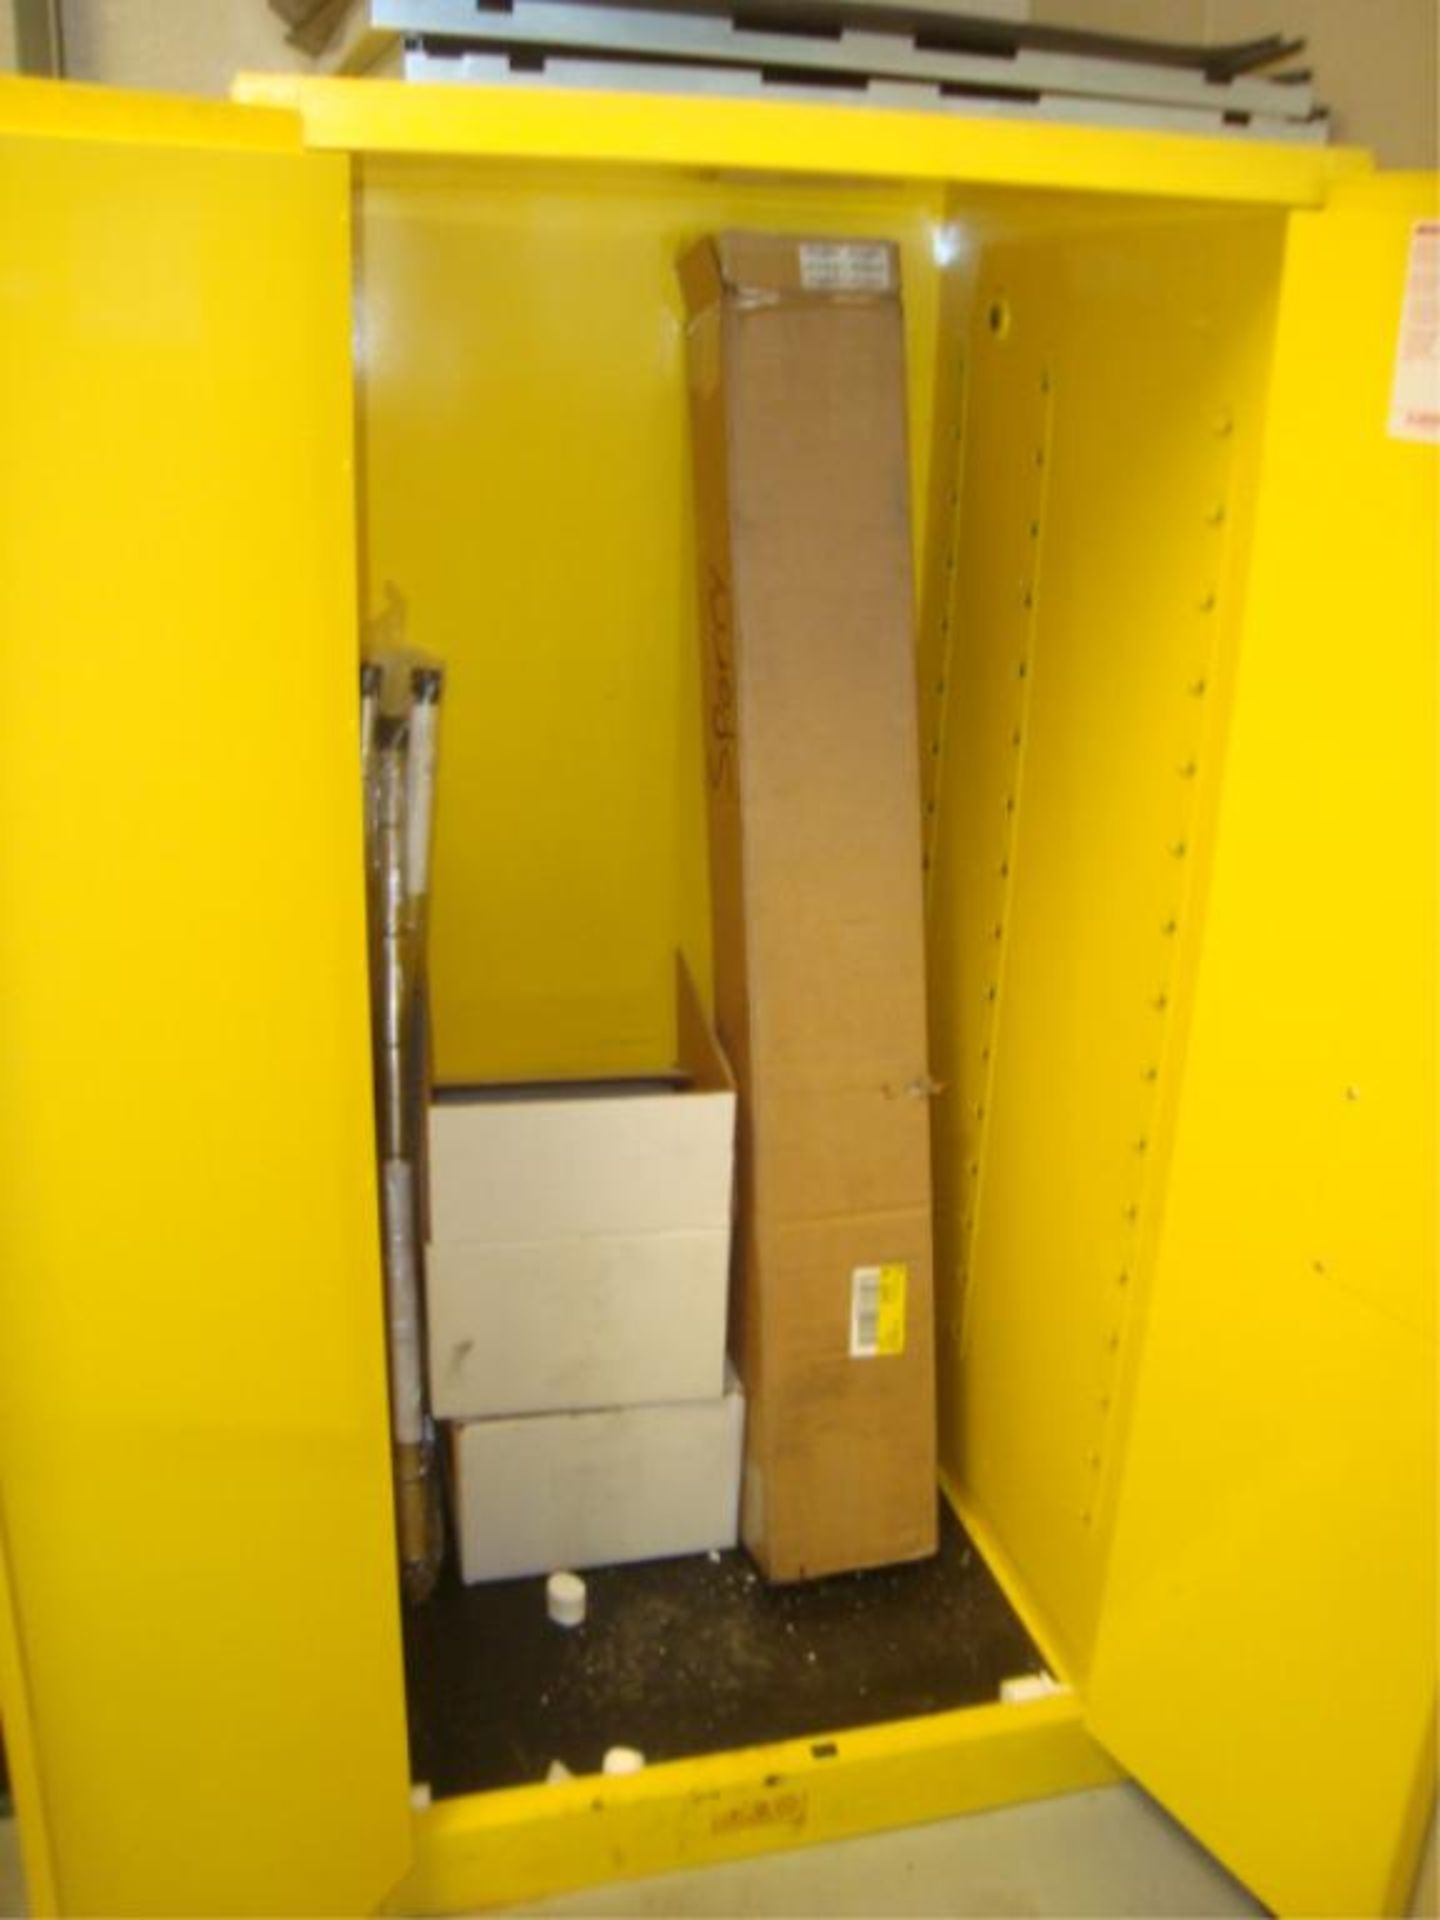 2-Door Flammable Contents Storage Cabinet - Image 2 of 4